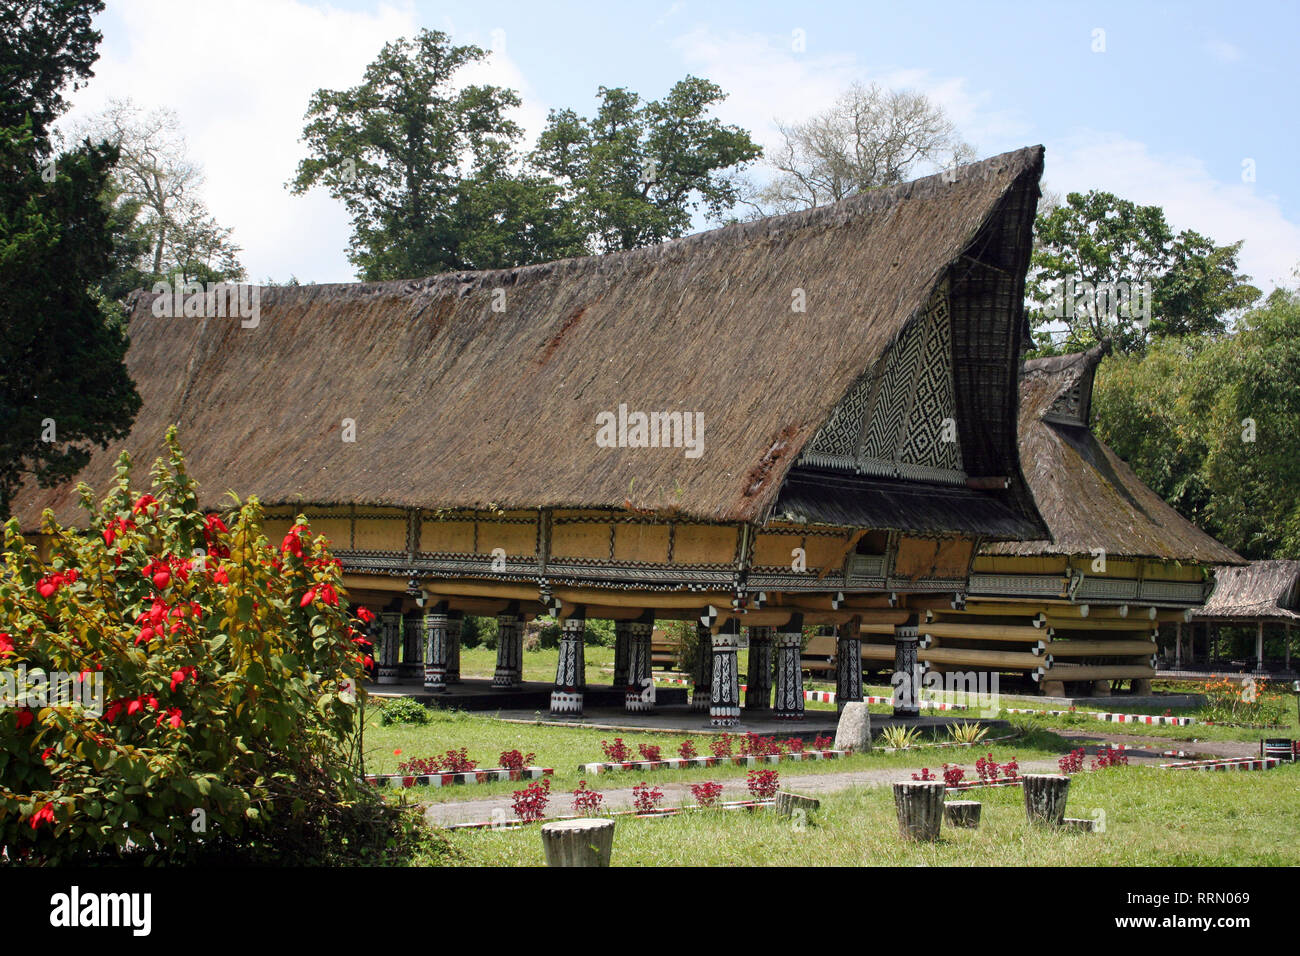 Palace of the Simalungun Kings at Pematang Purba, Sumatra Stock Photo